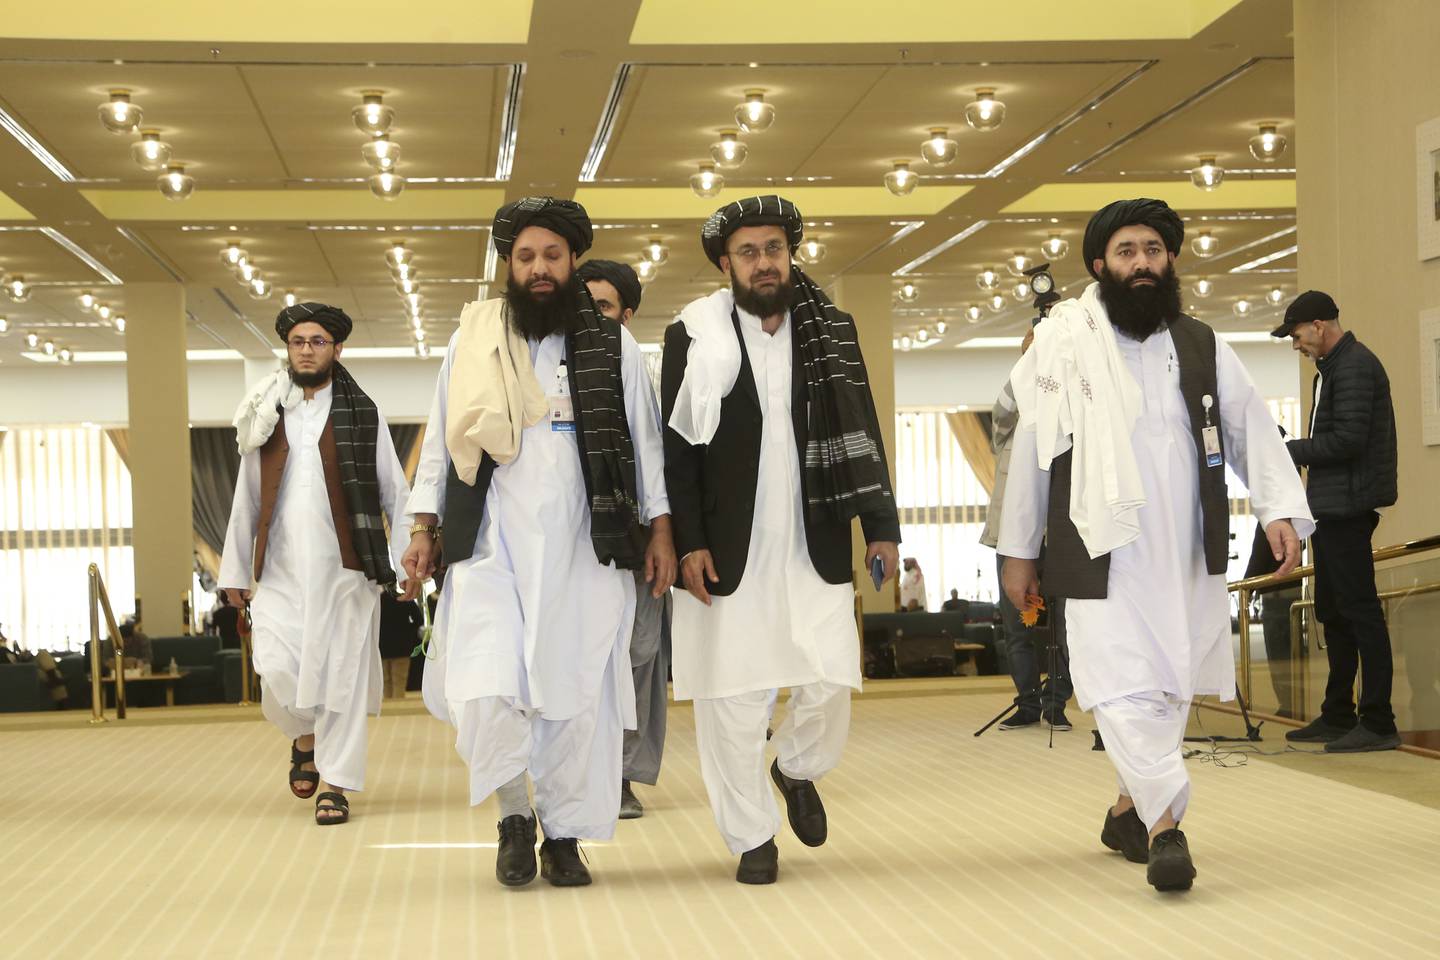 Afghanistan's Taliban delegation